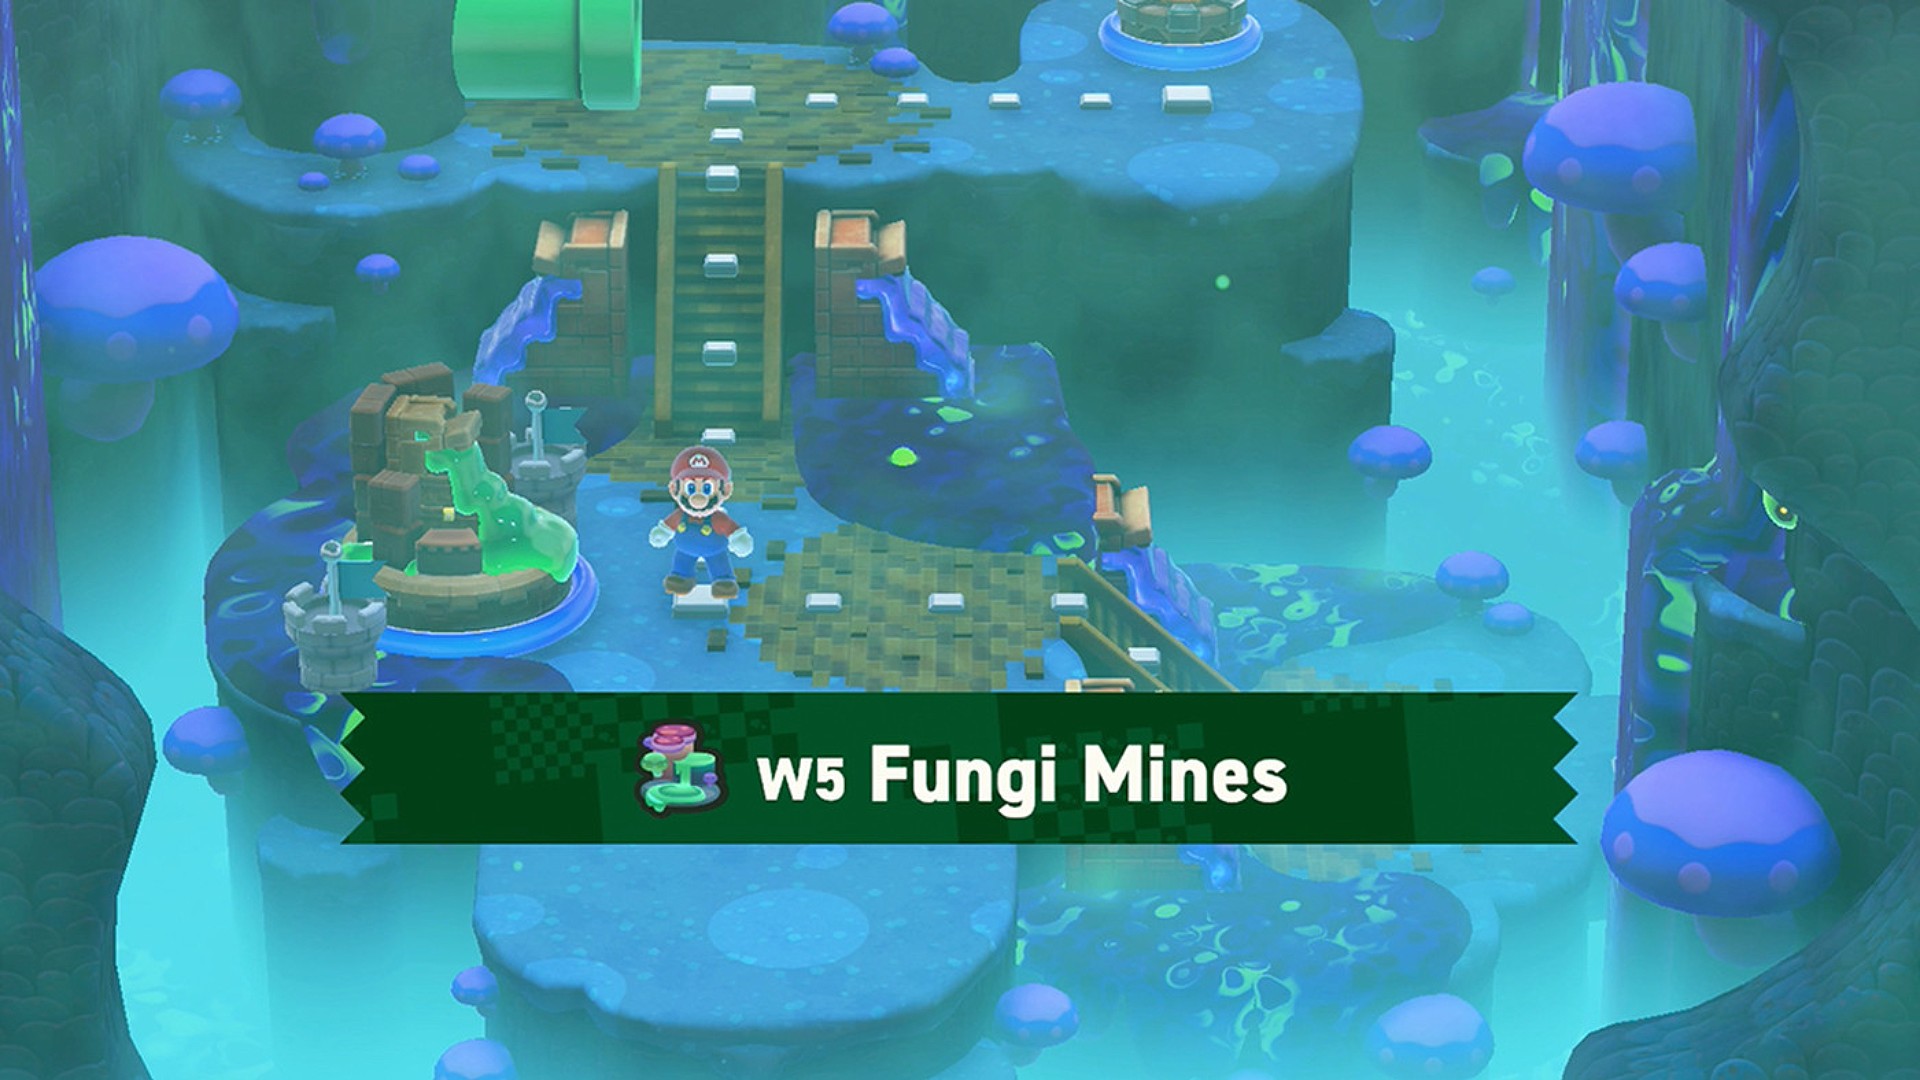 Fungi Mines World in Super Mario Bros Wonder